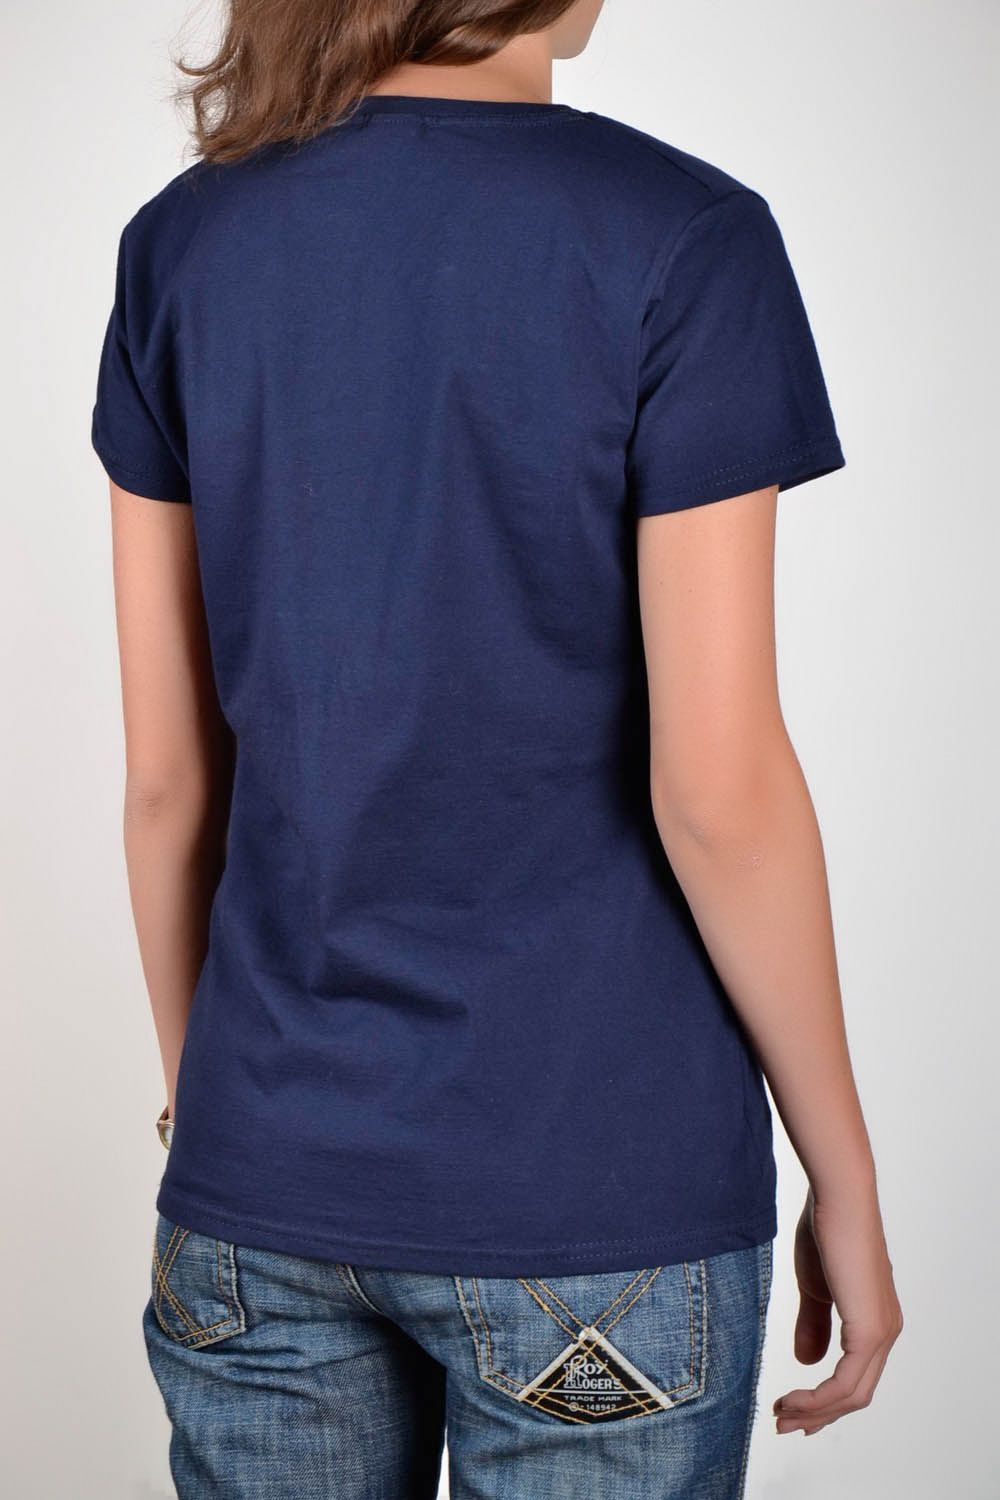 Женская футболка темно-синяя Ежик фото 3